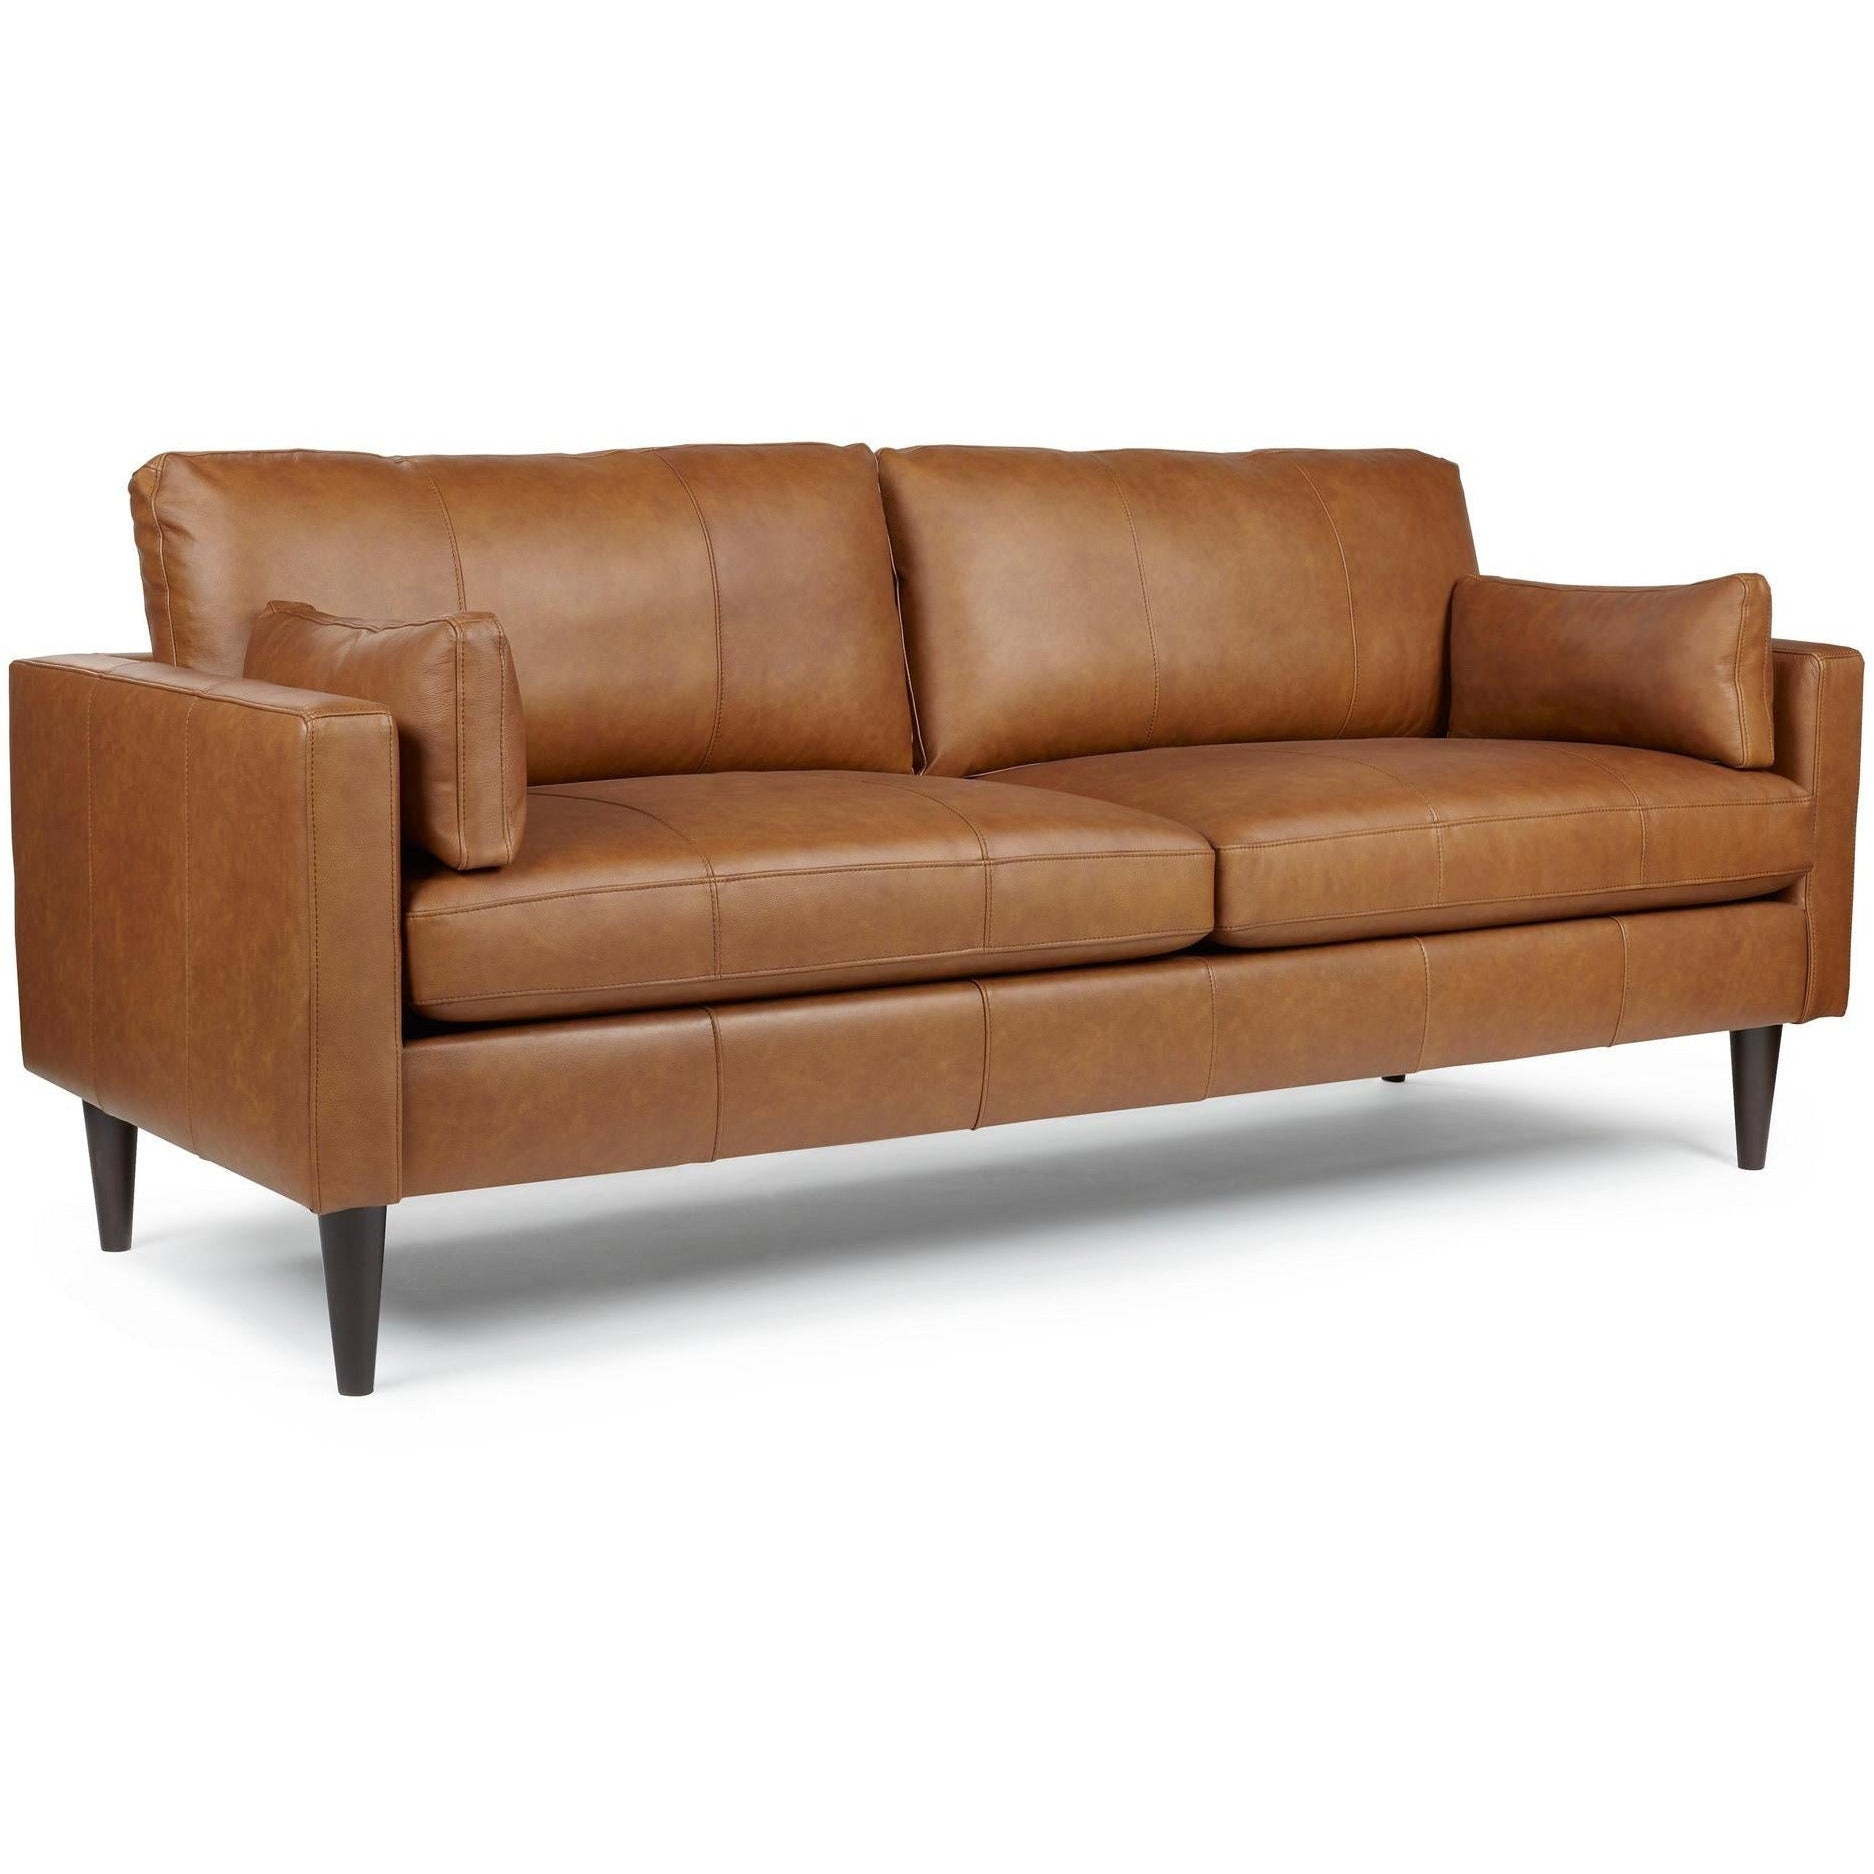 Trafton Leather Sofa Rust